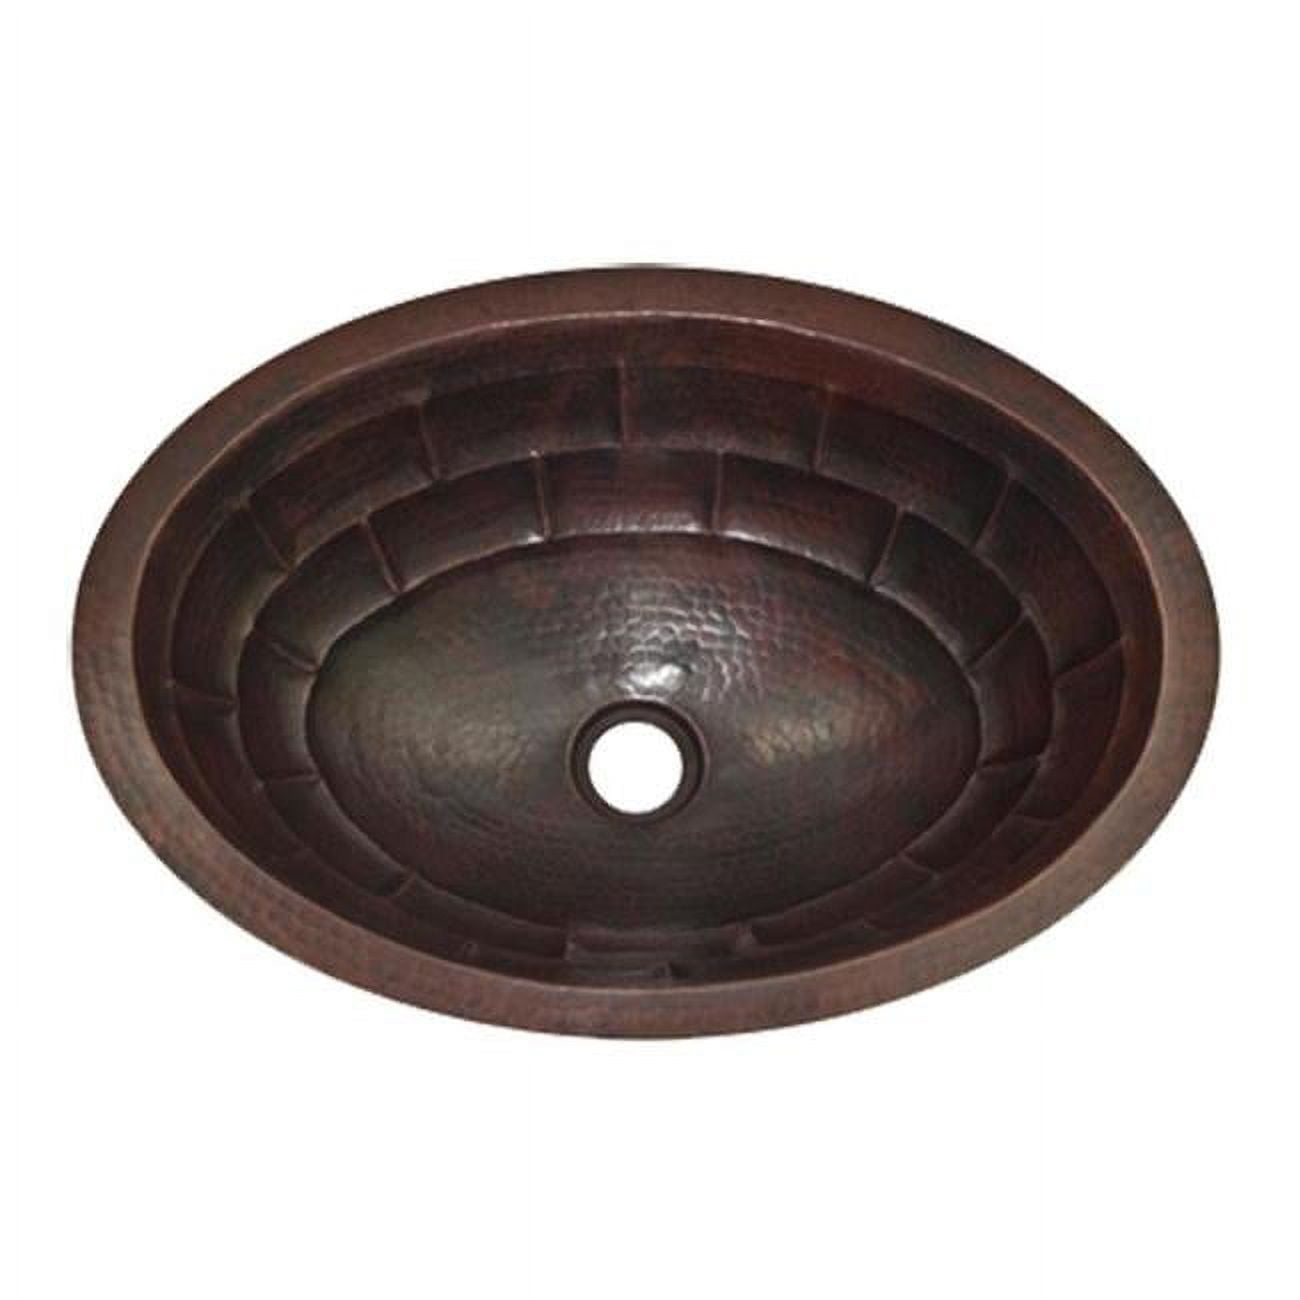 Cos-ts-17-rl-db Copper Oval Bath Sink, Dark Brown - Turtle Shell Design - 5.5 X 12.5 X 17 In.